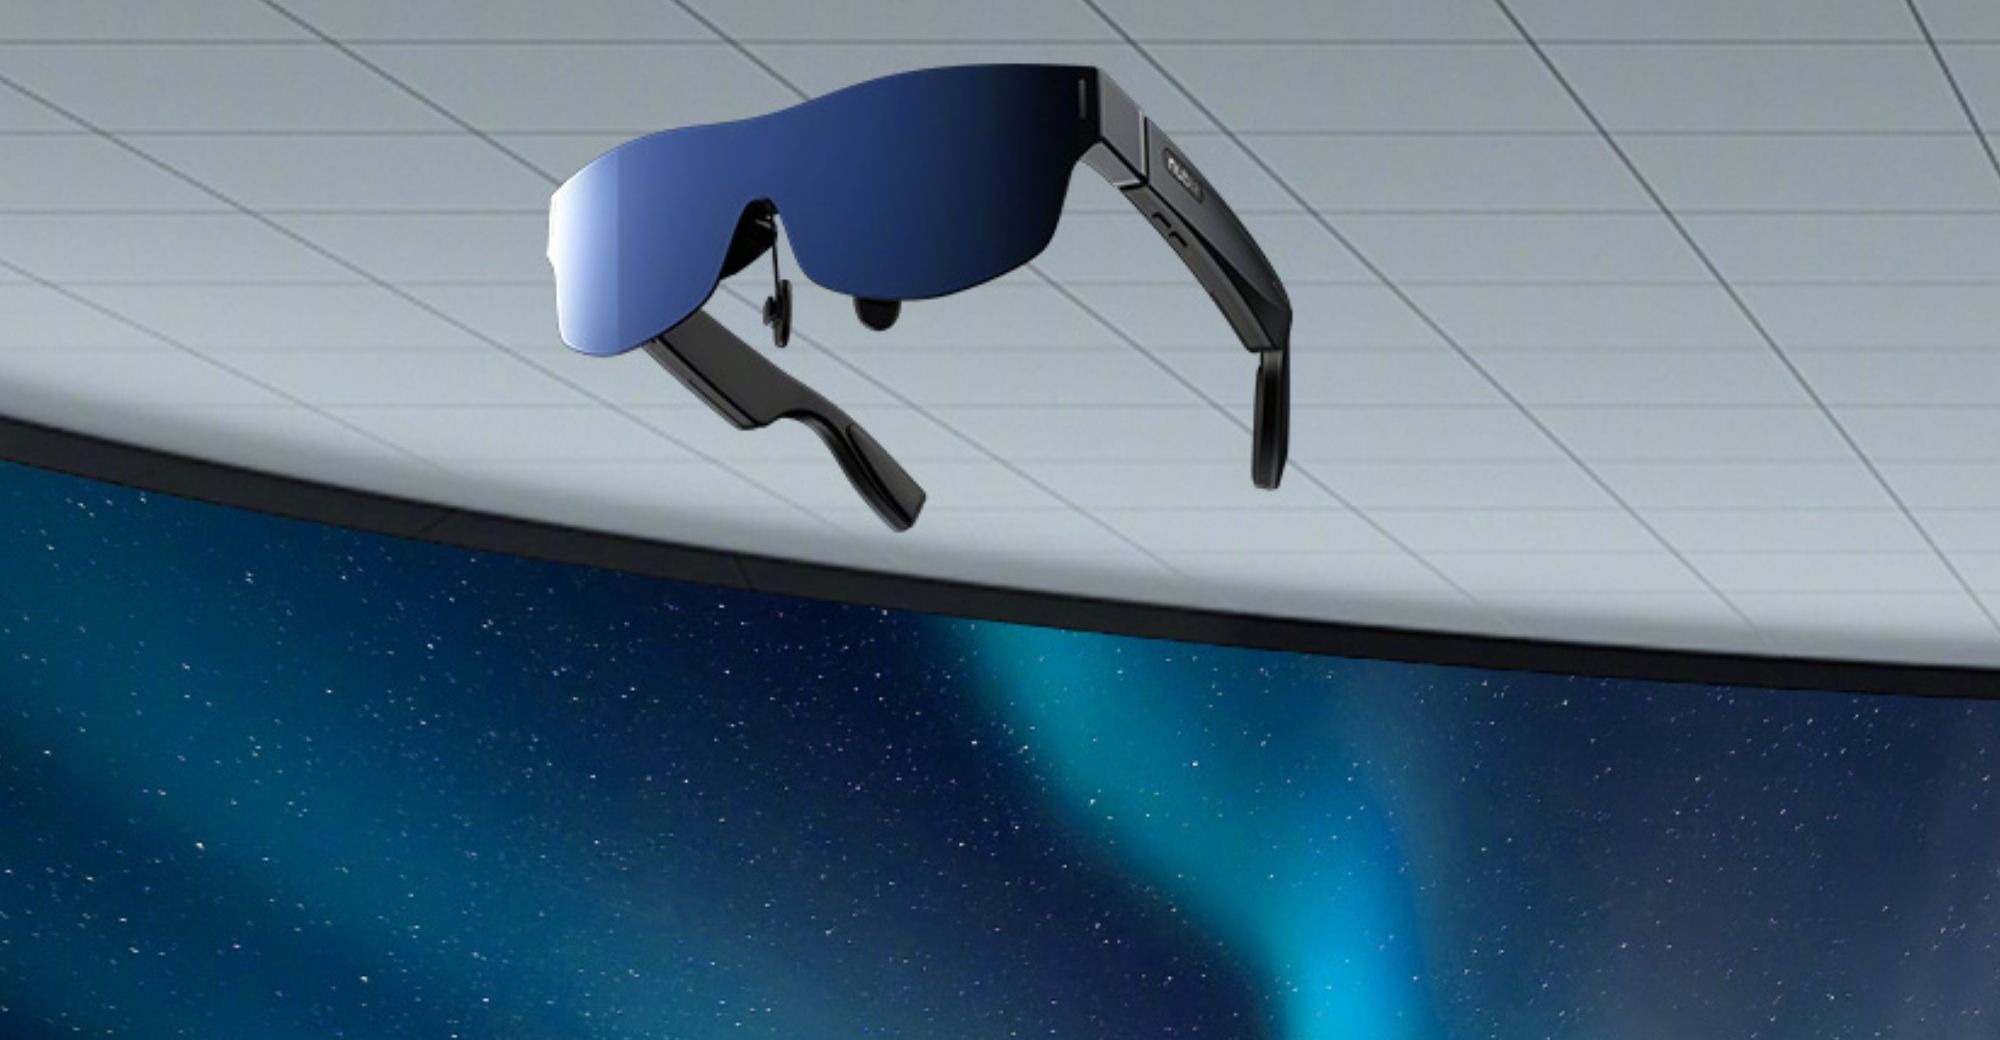 nubia presenta las primeras gafas inteligentes del mundo con certificación TÜV Rheinland, Hi-Res y pantalla virtual de 120